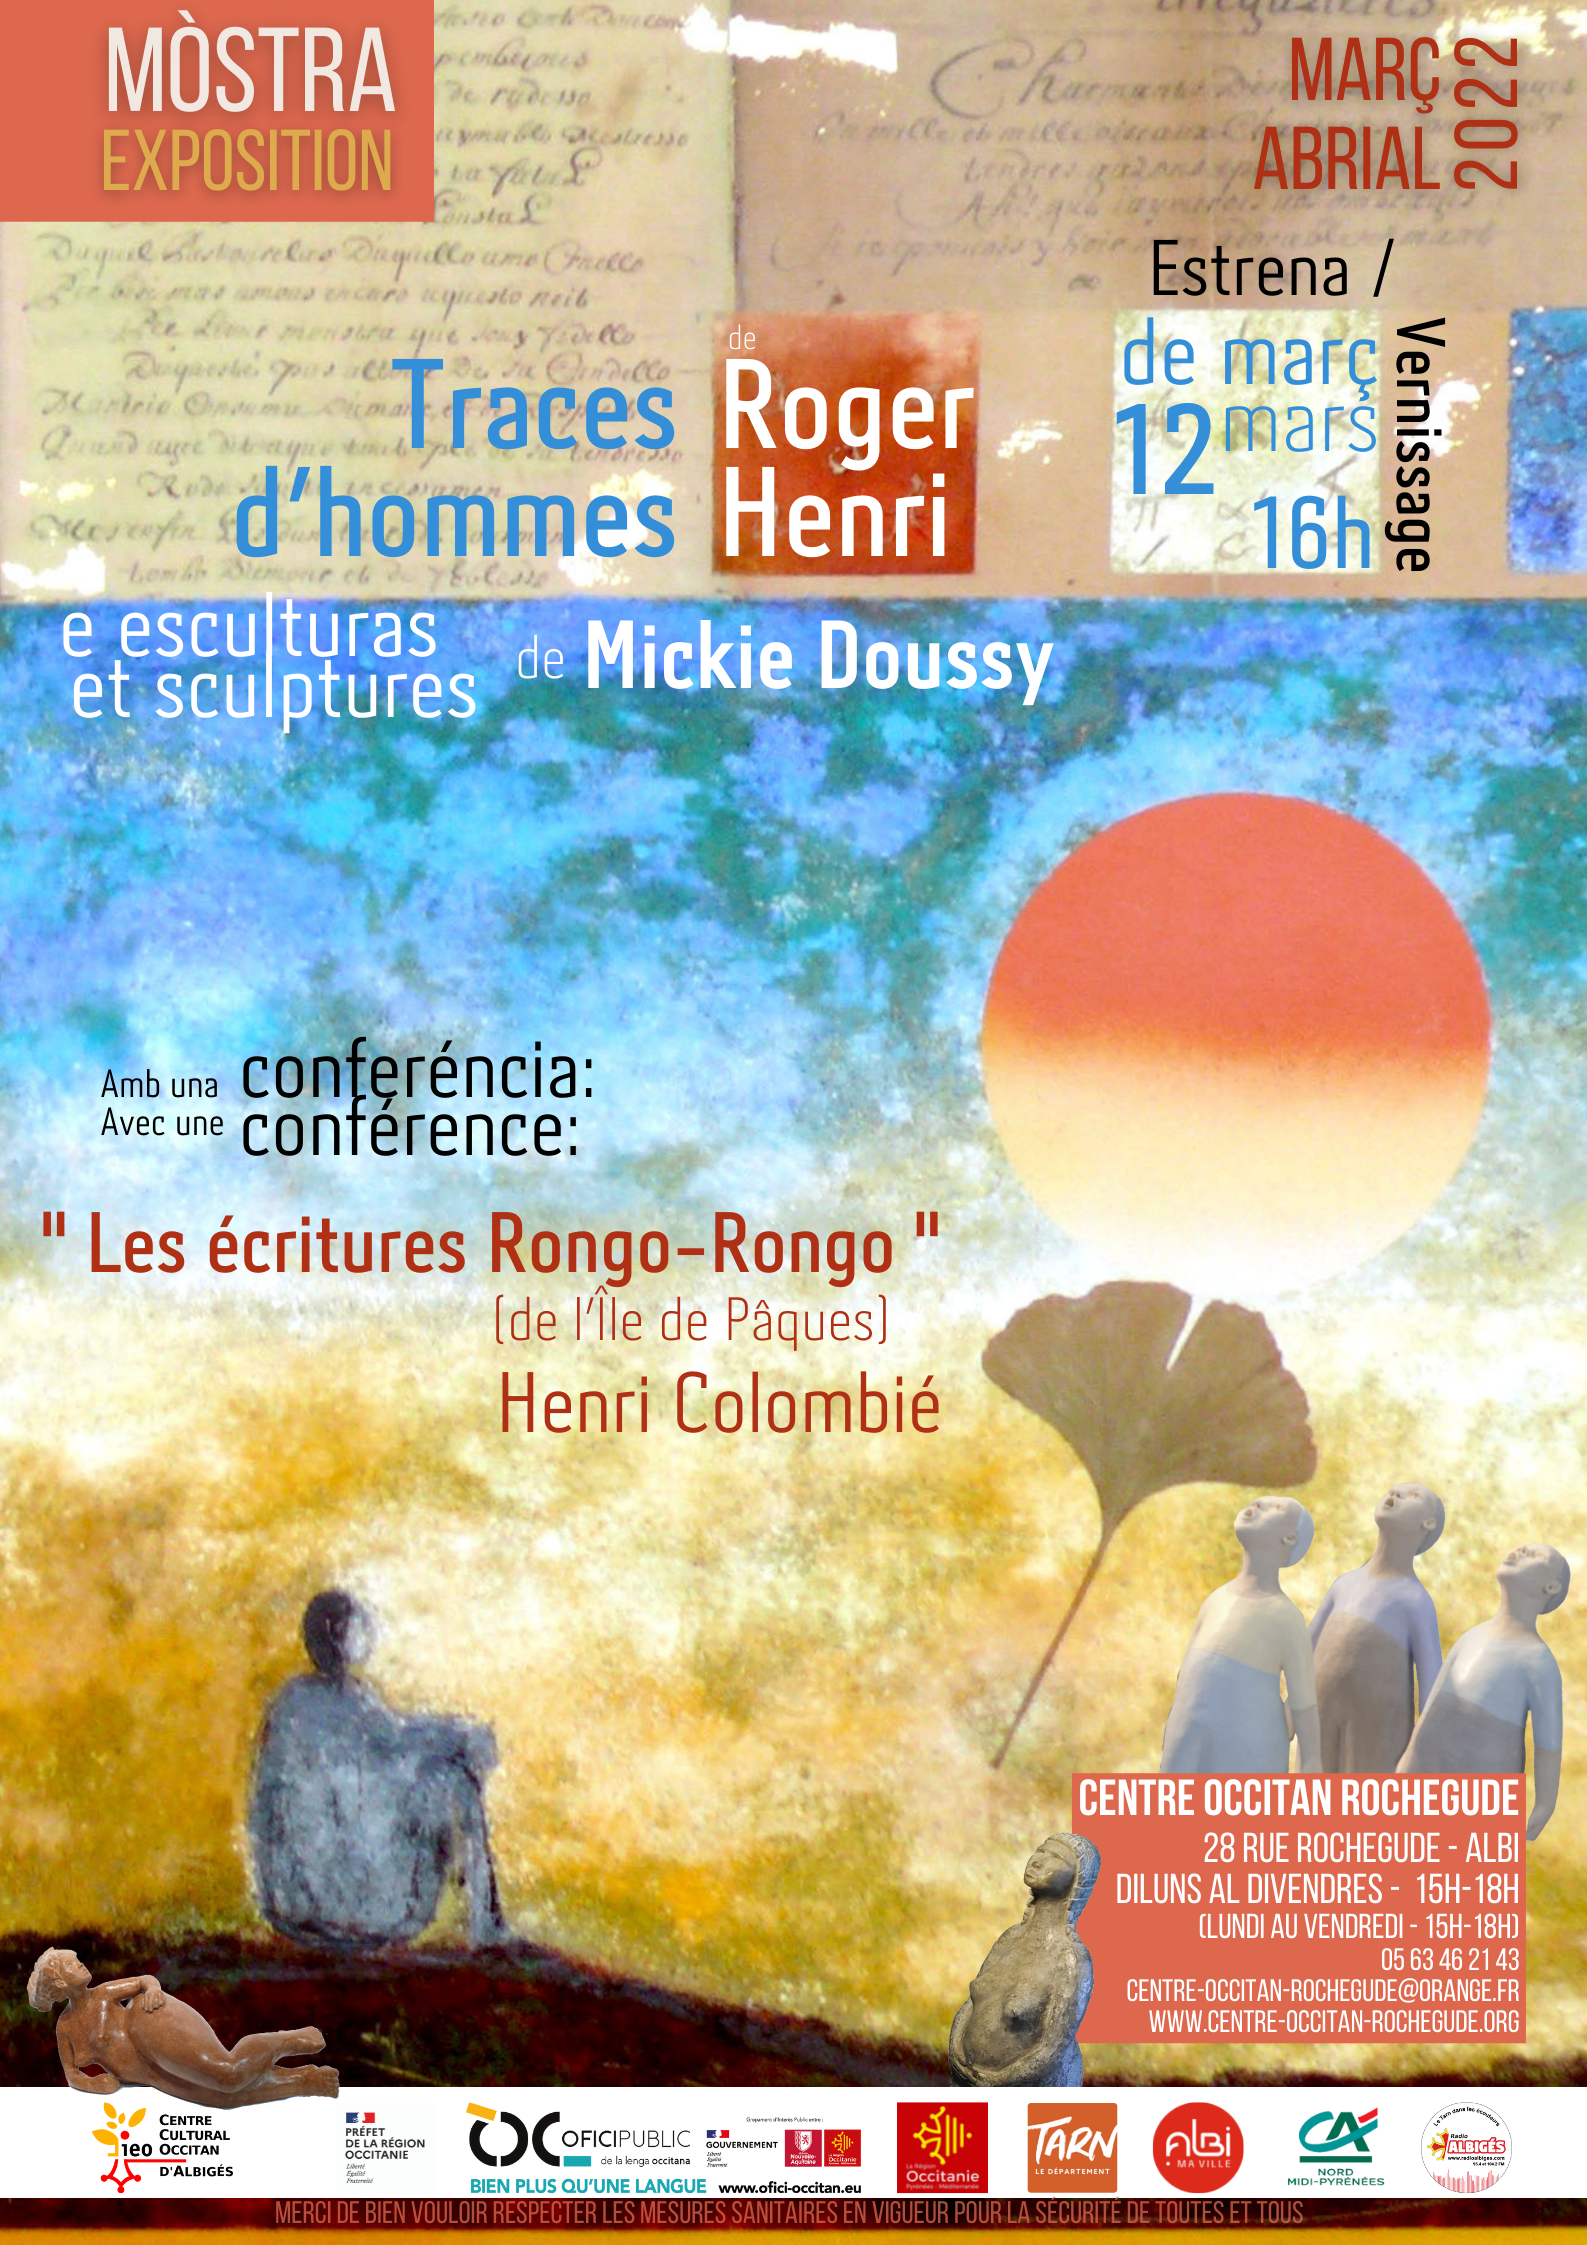 Lire la suite à propos de l’article Mòstra  » Traces d’hommes » de Roger Henri e Mickie Doussy e las escrituras Rongorongo amb Henri Colombié al Centre Occitan Rochegude !